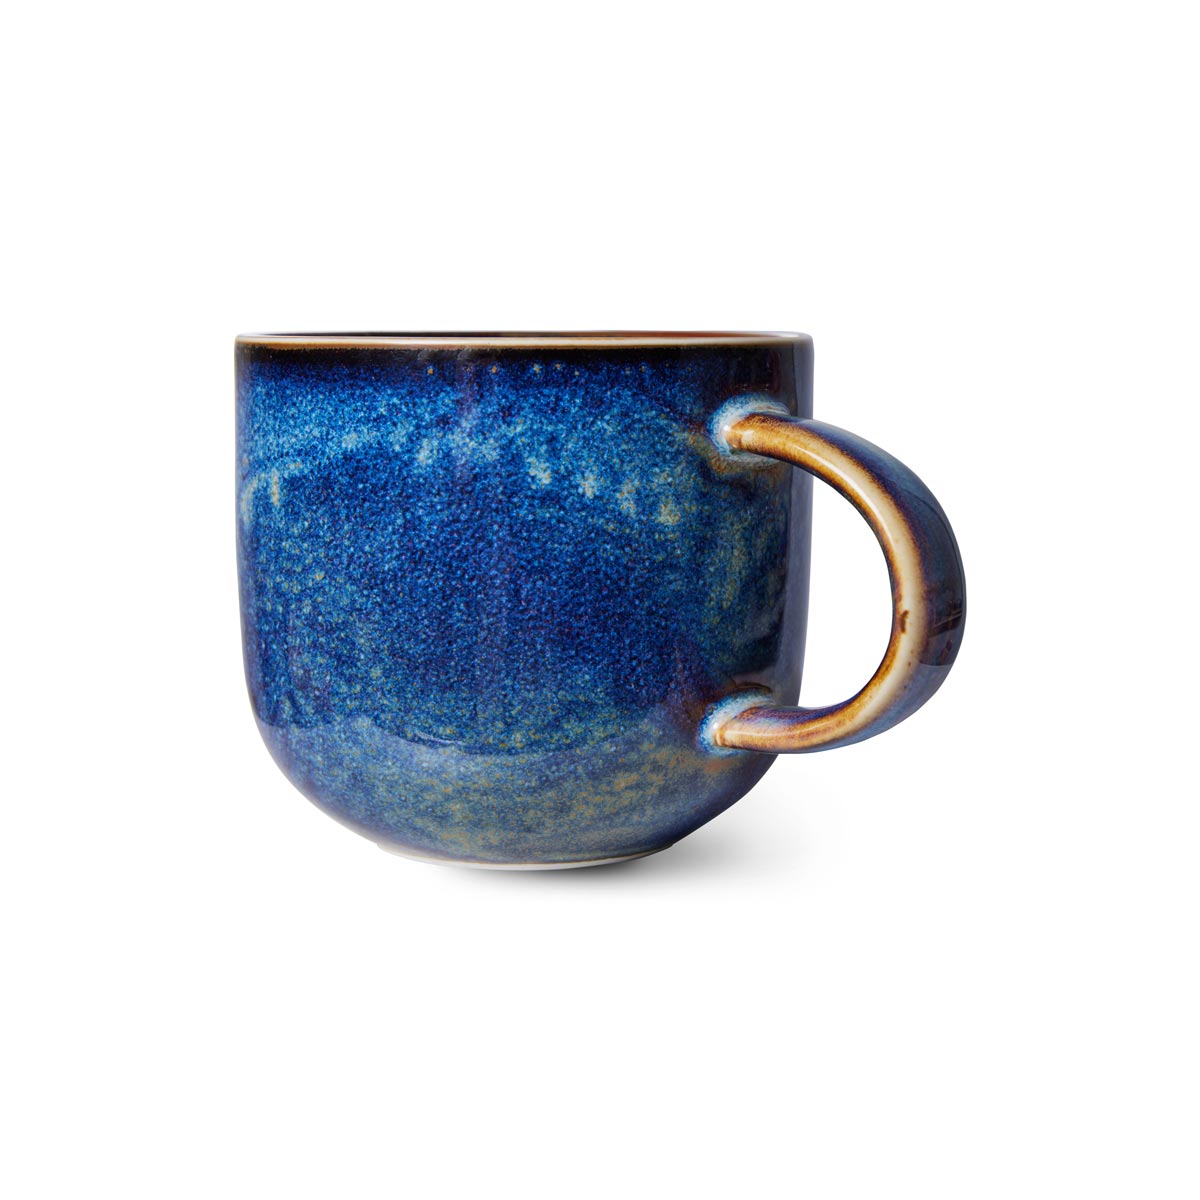 Home Chef Ceramics: Mug Rustic Blue